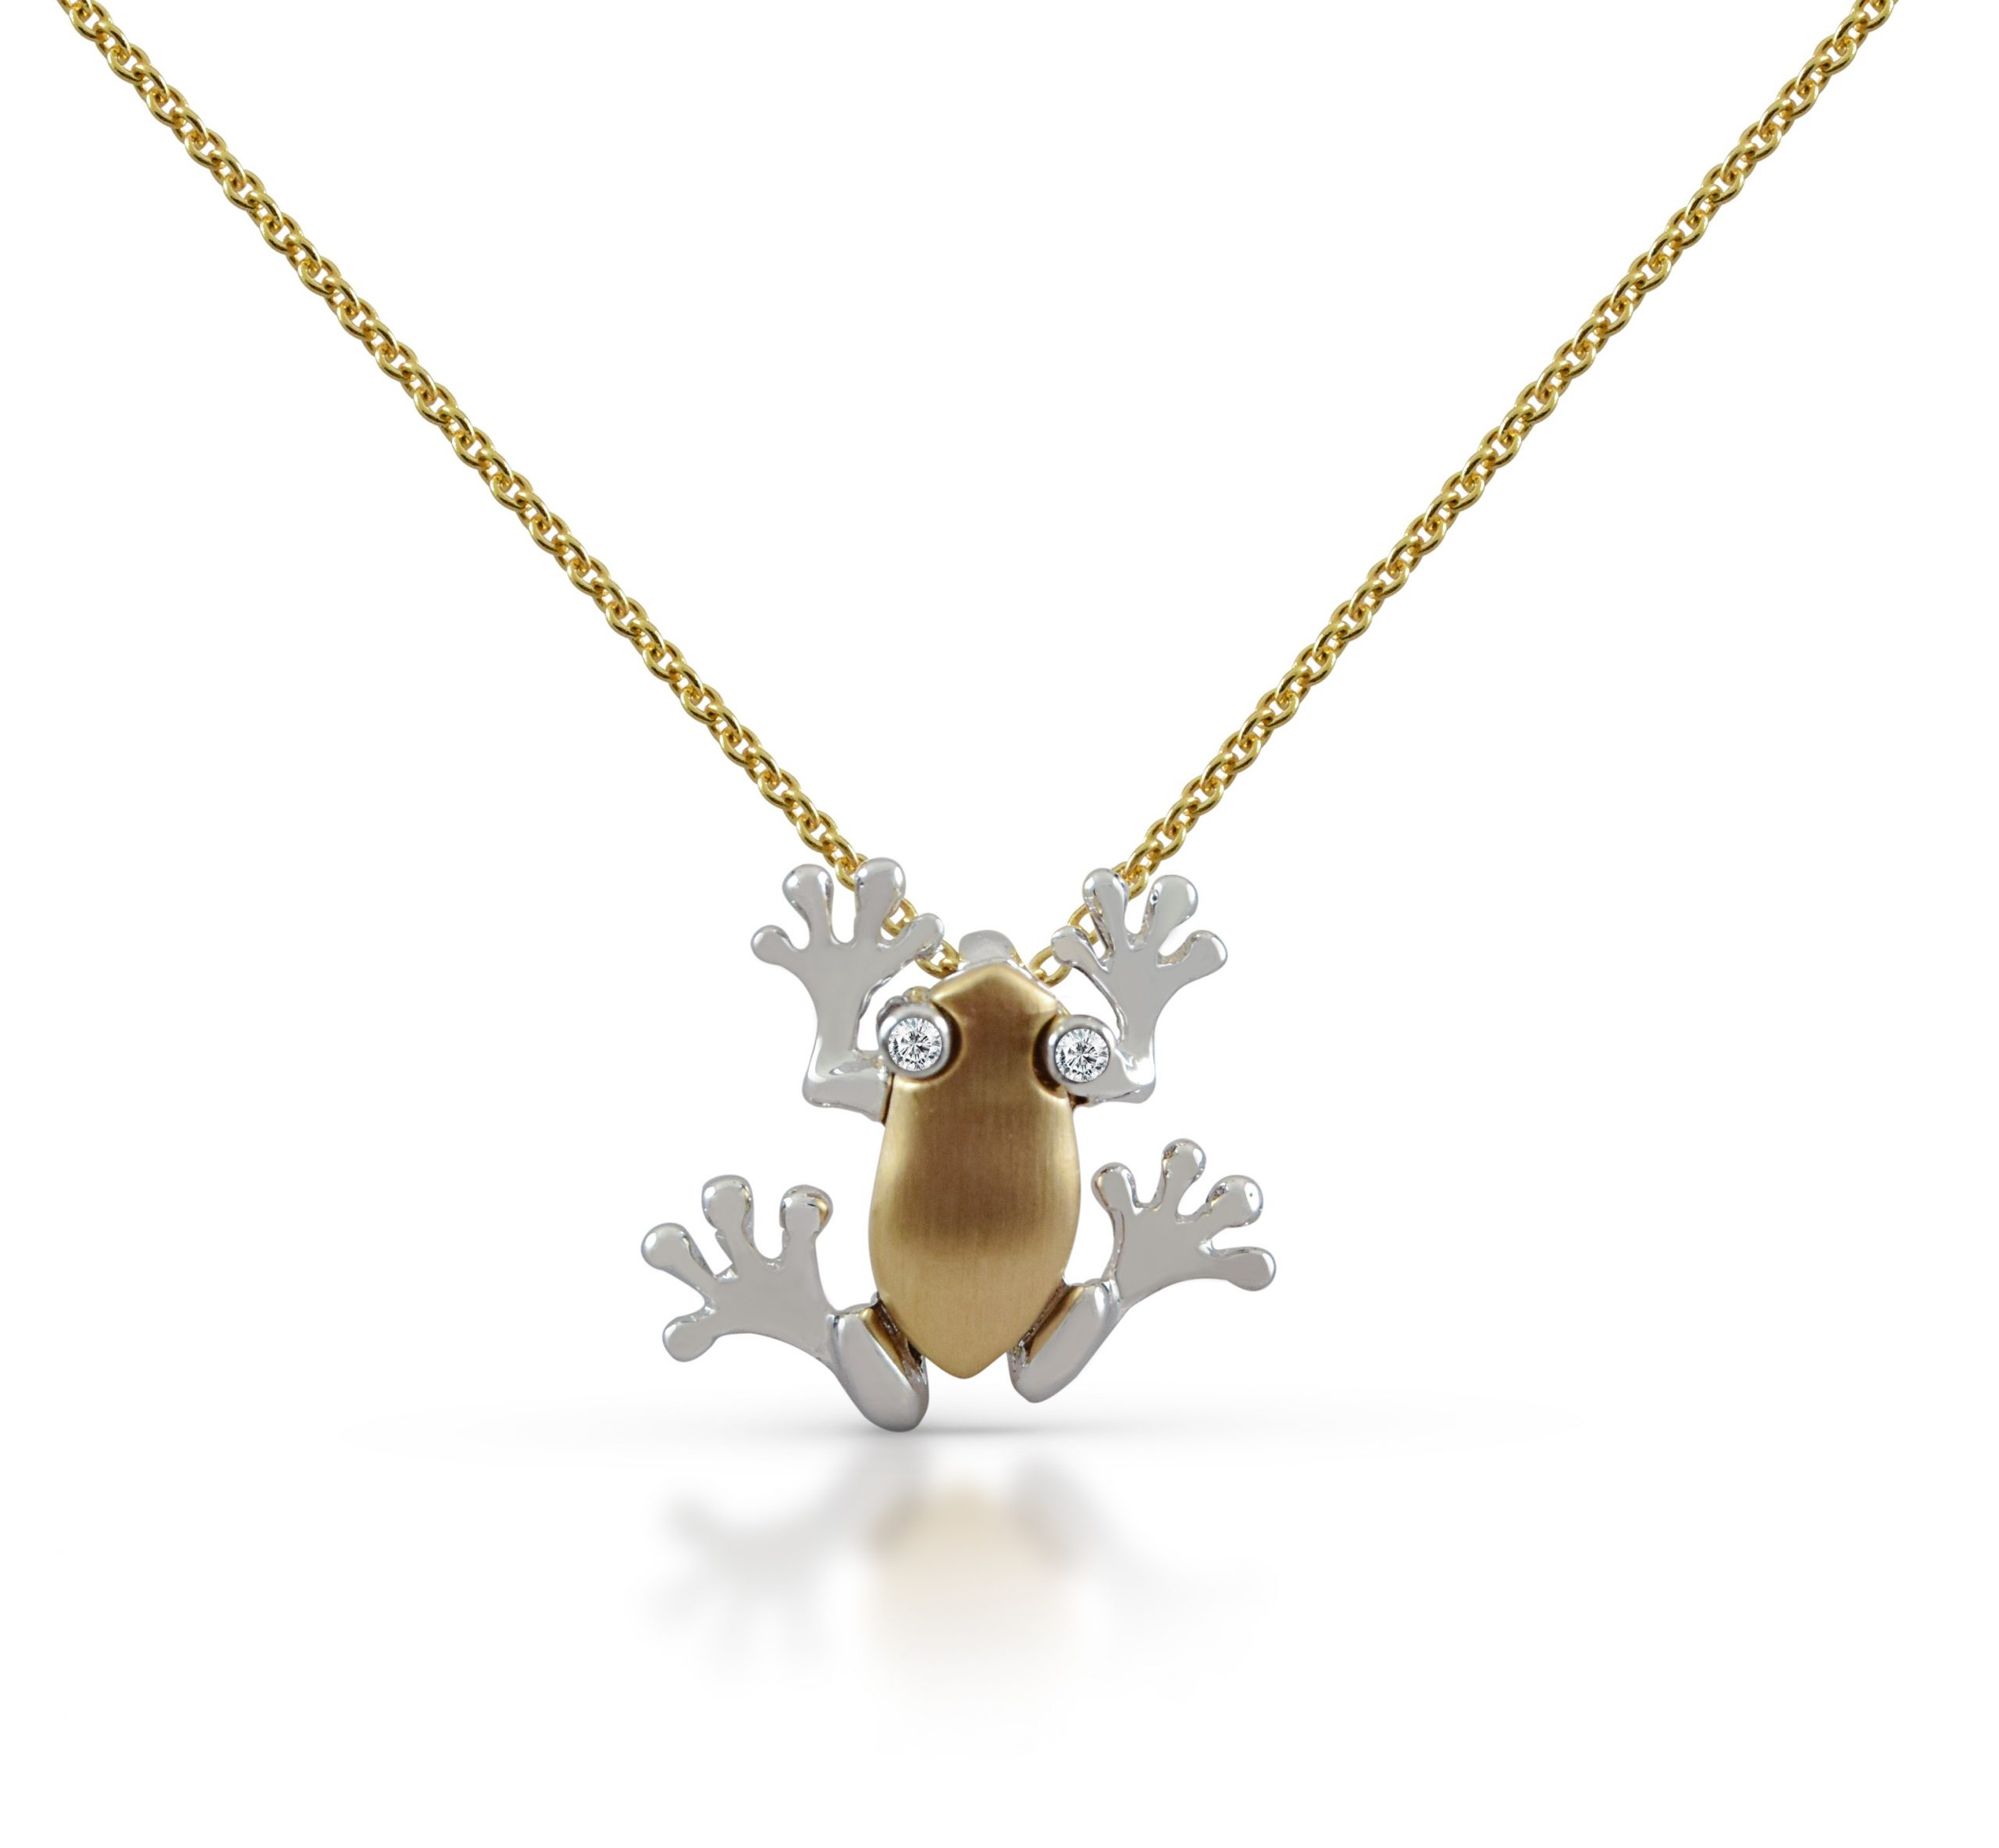 Animal Kingdom Polished 14k White Gold Frog Pendant Necklace, 16